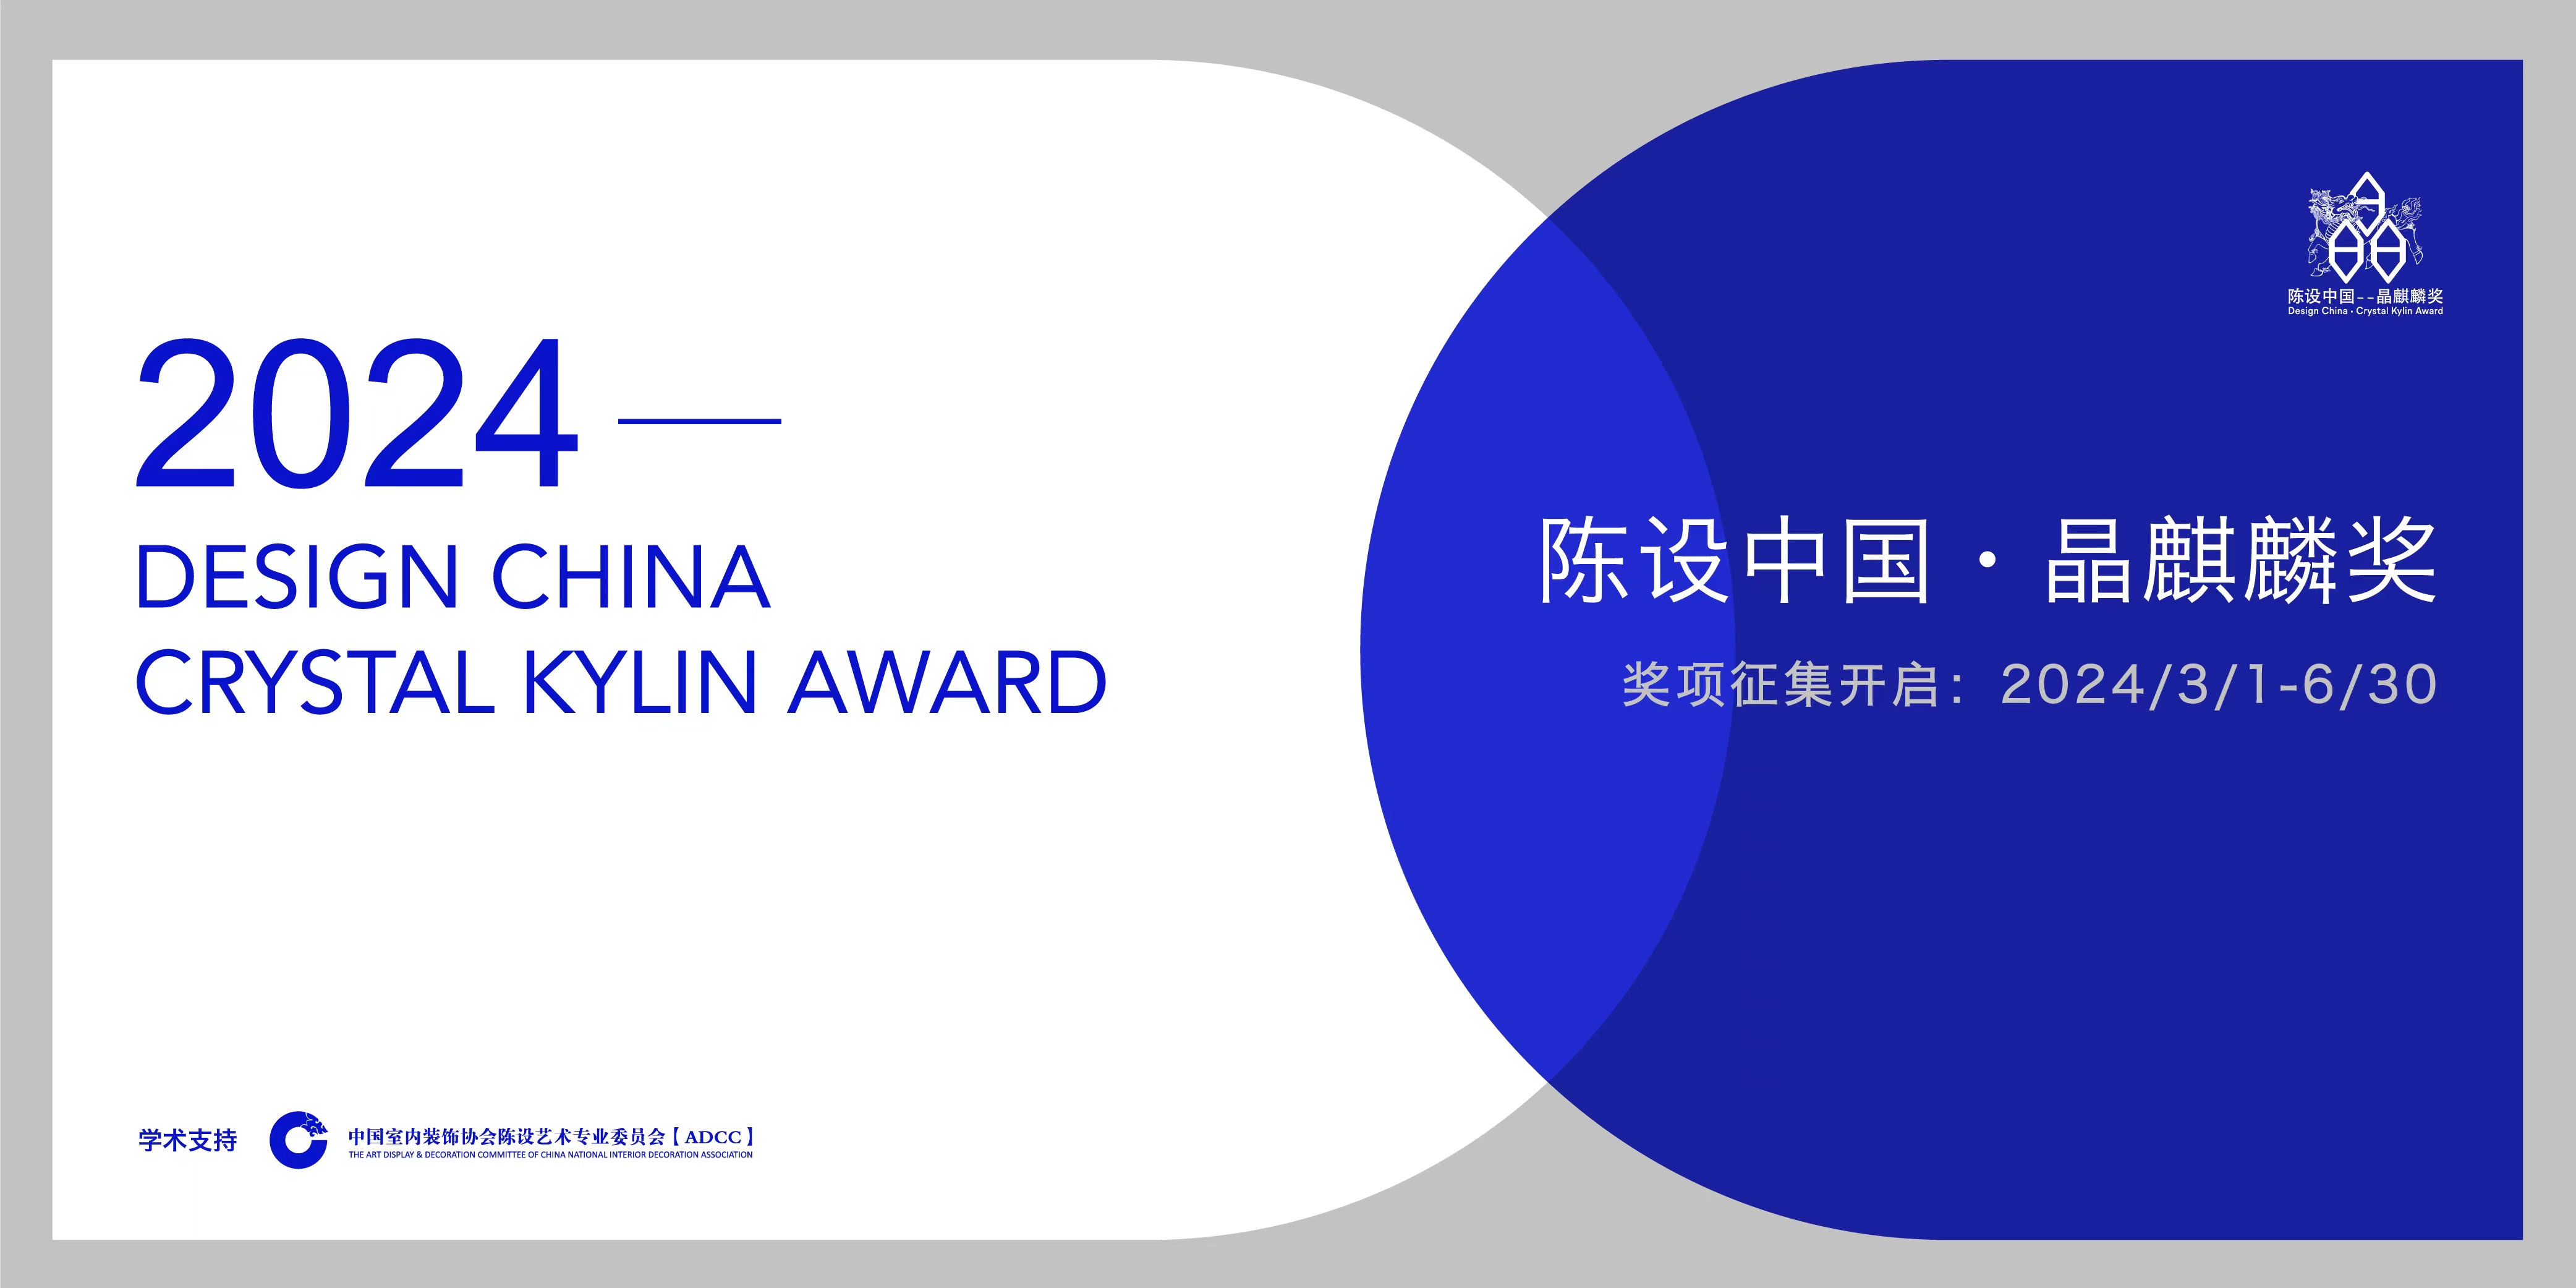 【陈设中国·晶麒麟奖】Design China • Crystal Kylin Award距报名截止还剩 19天关注生活·关注人文·关注未来在静谧的空间里，陈设...